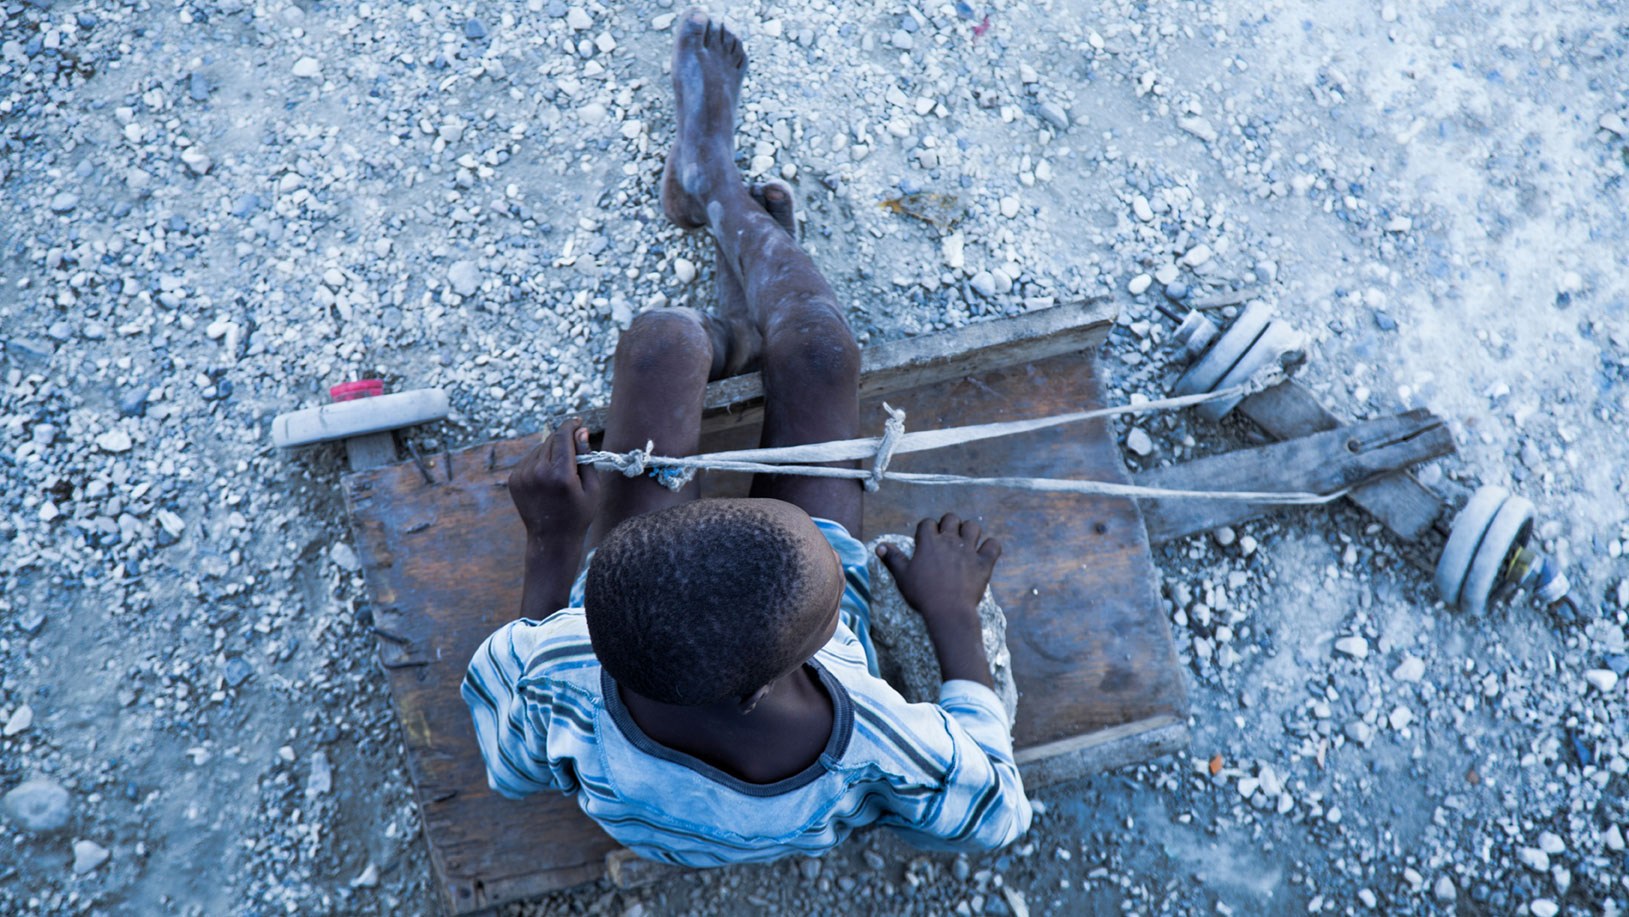 Kind in Afrika mit selbstgebautem Spielzeug: Die UN-Kinderrechtskonvention regelt den Kinderschutz umfassend.